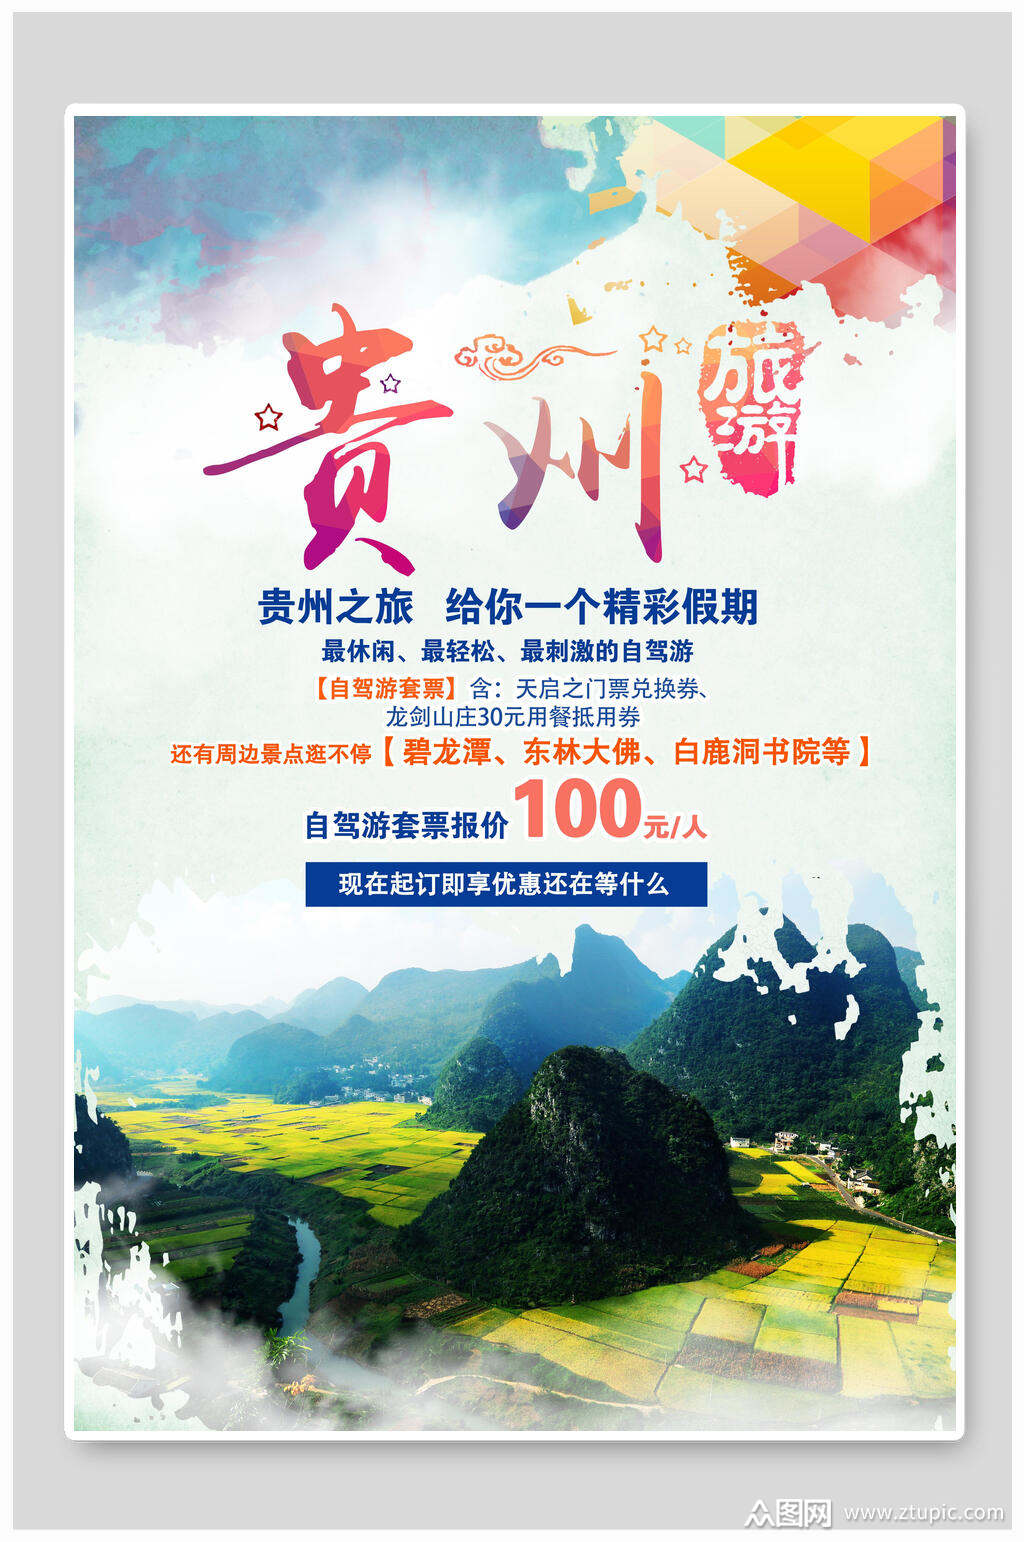 贵州旅游贵阳之旅宣传海报素材